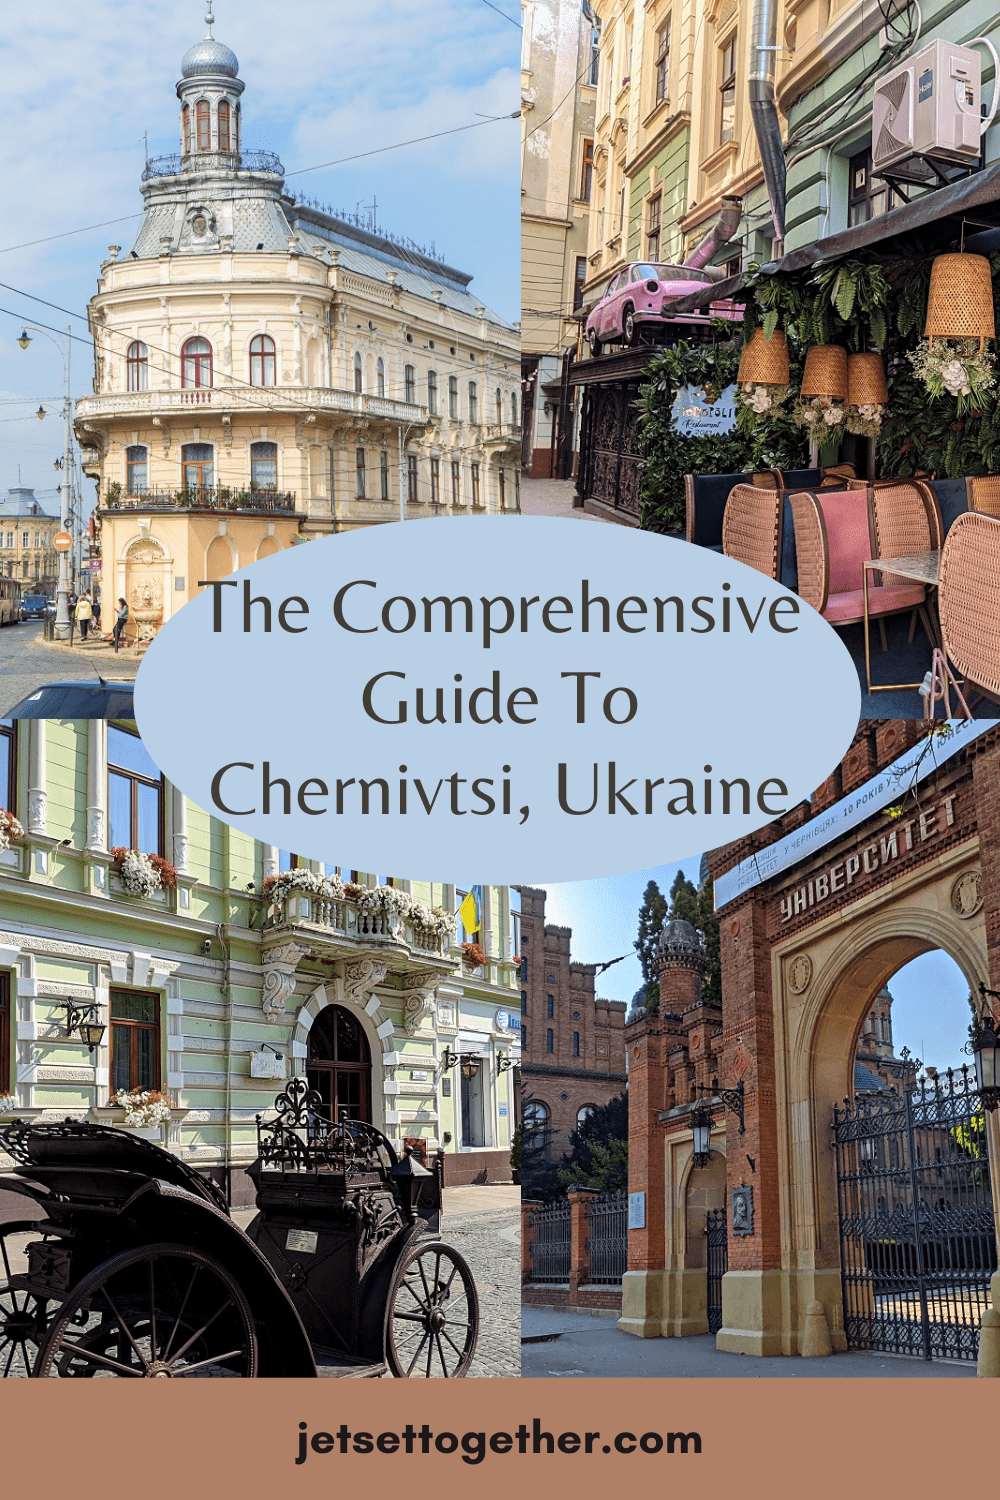 The Comprehensive Guide To Chernivtsi, Ukraine